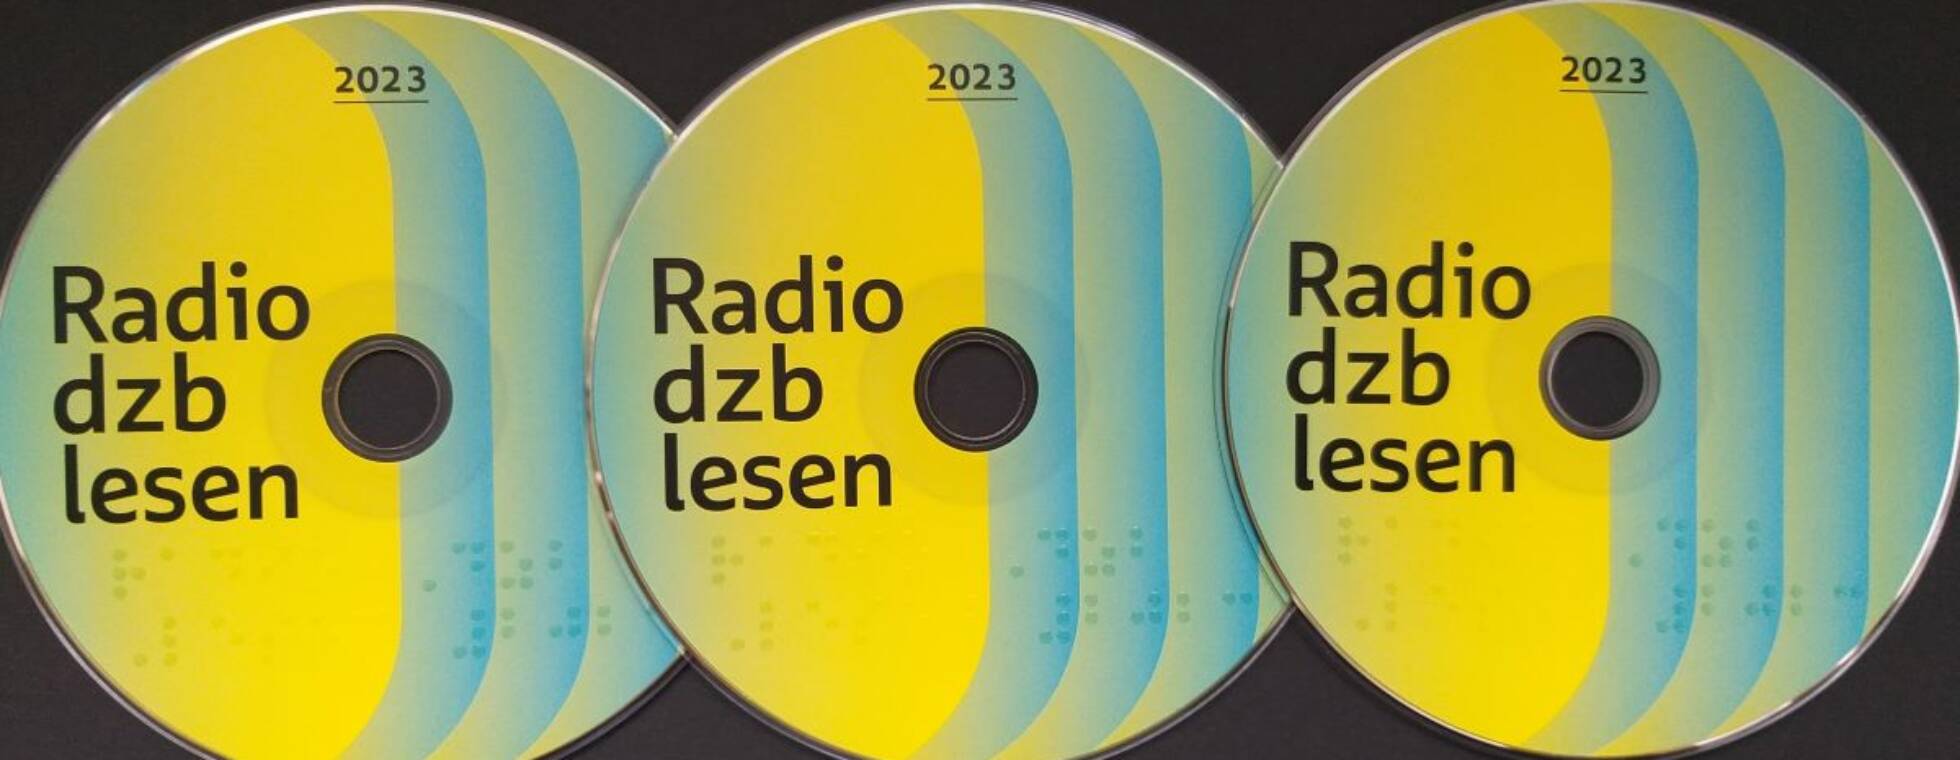 3 bunt gestaltete CDs der Radio dzb lesen 2023 auf schwarzem Hintergrund aufgereiht